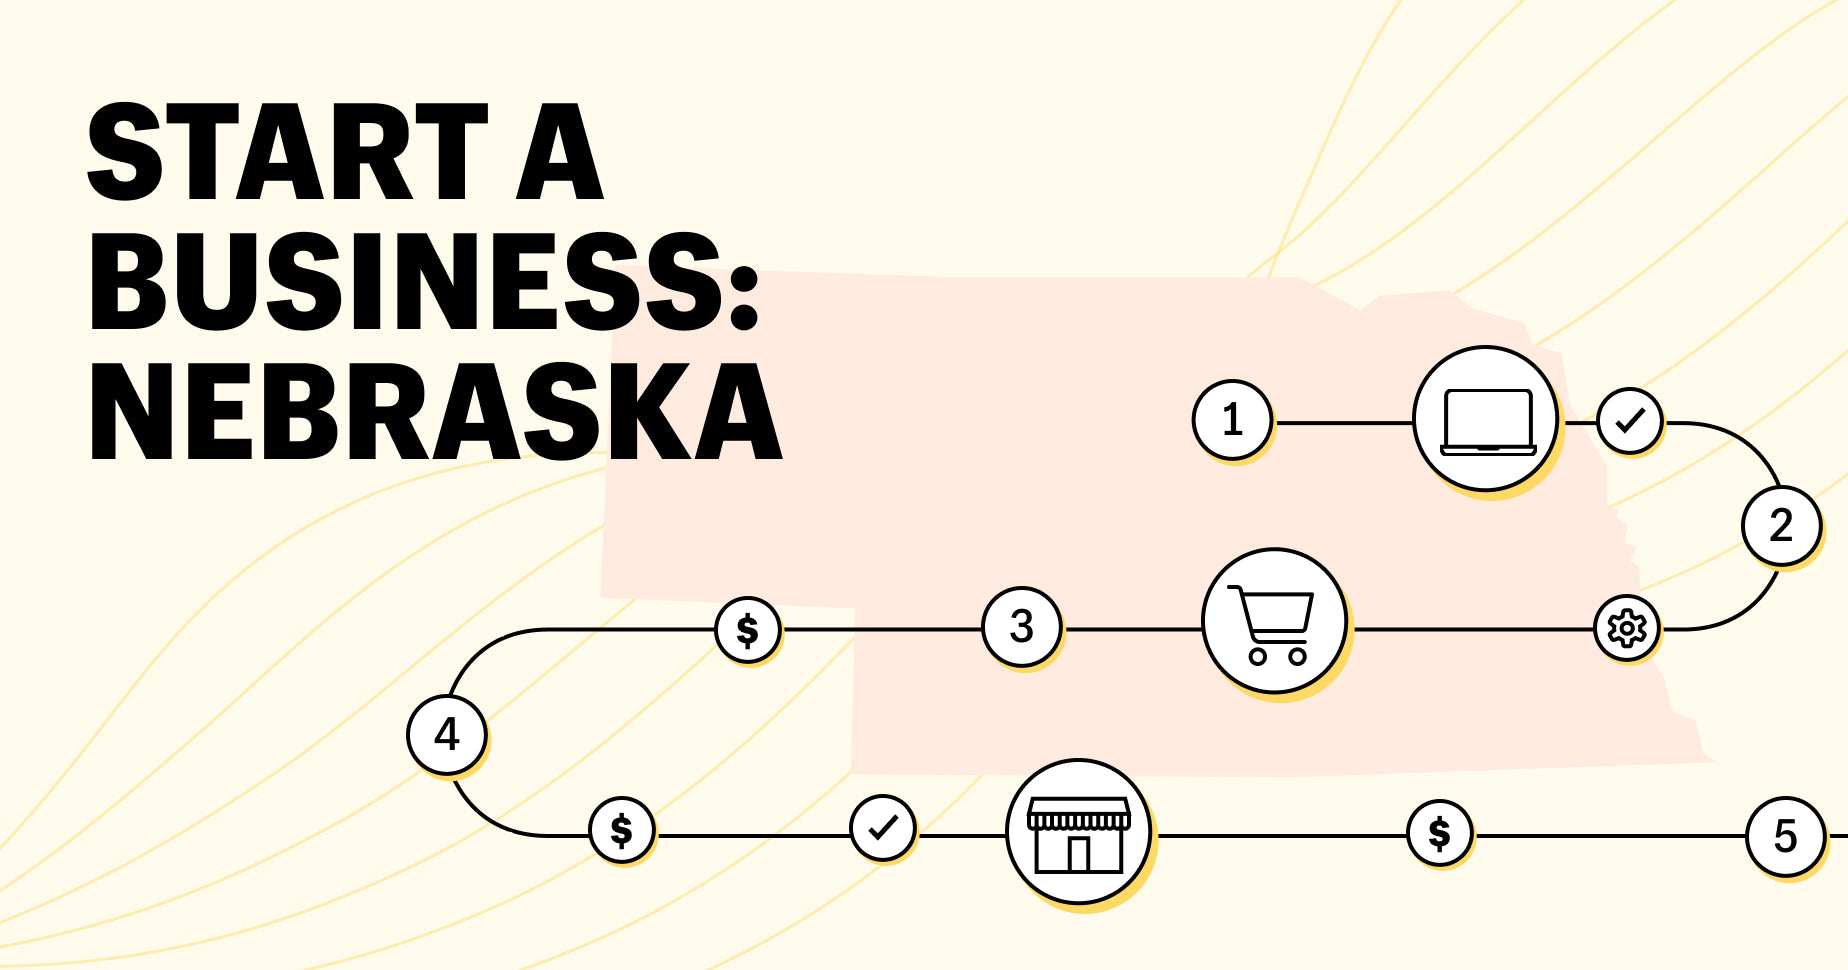 nebraska state outline: start a business in nebraska, laptop screen, storefront, shopping cart, and $ icons